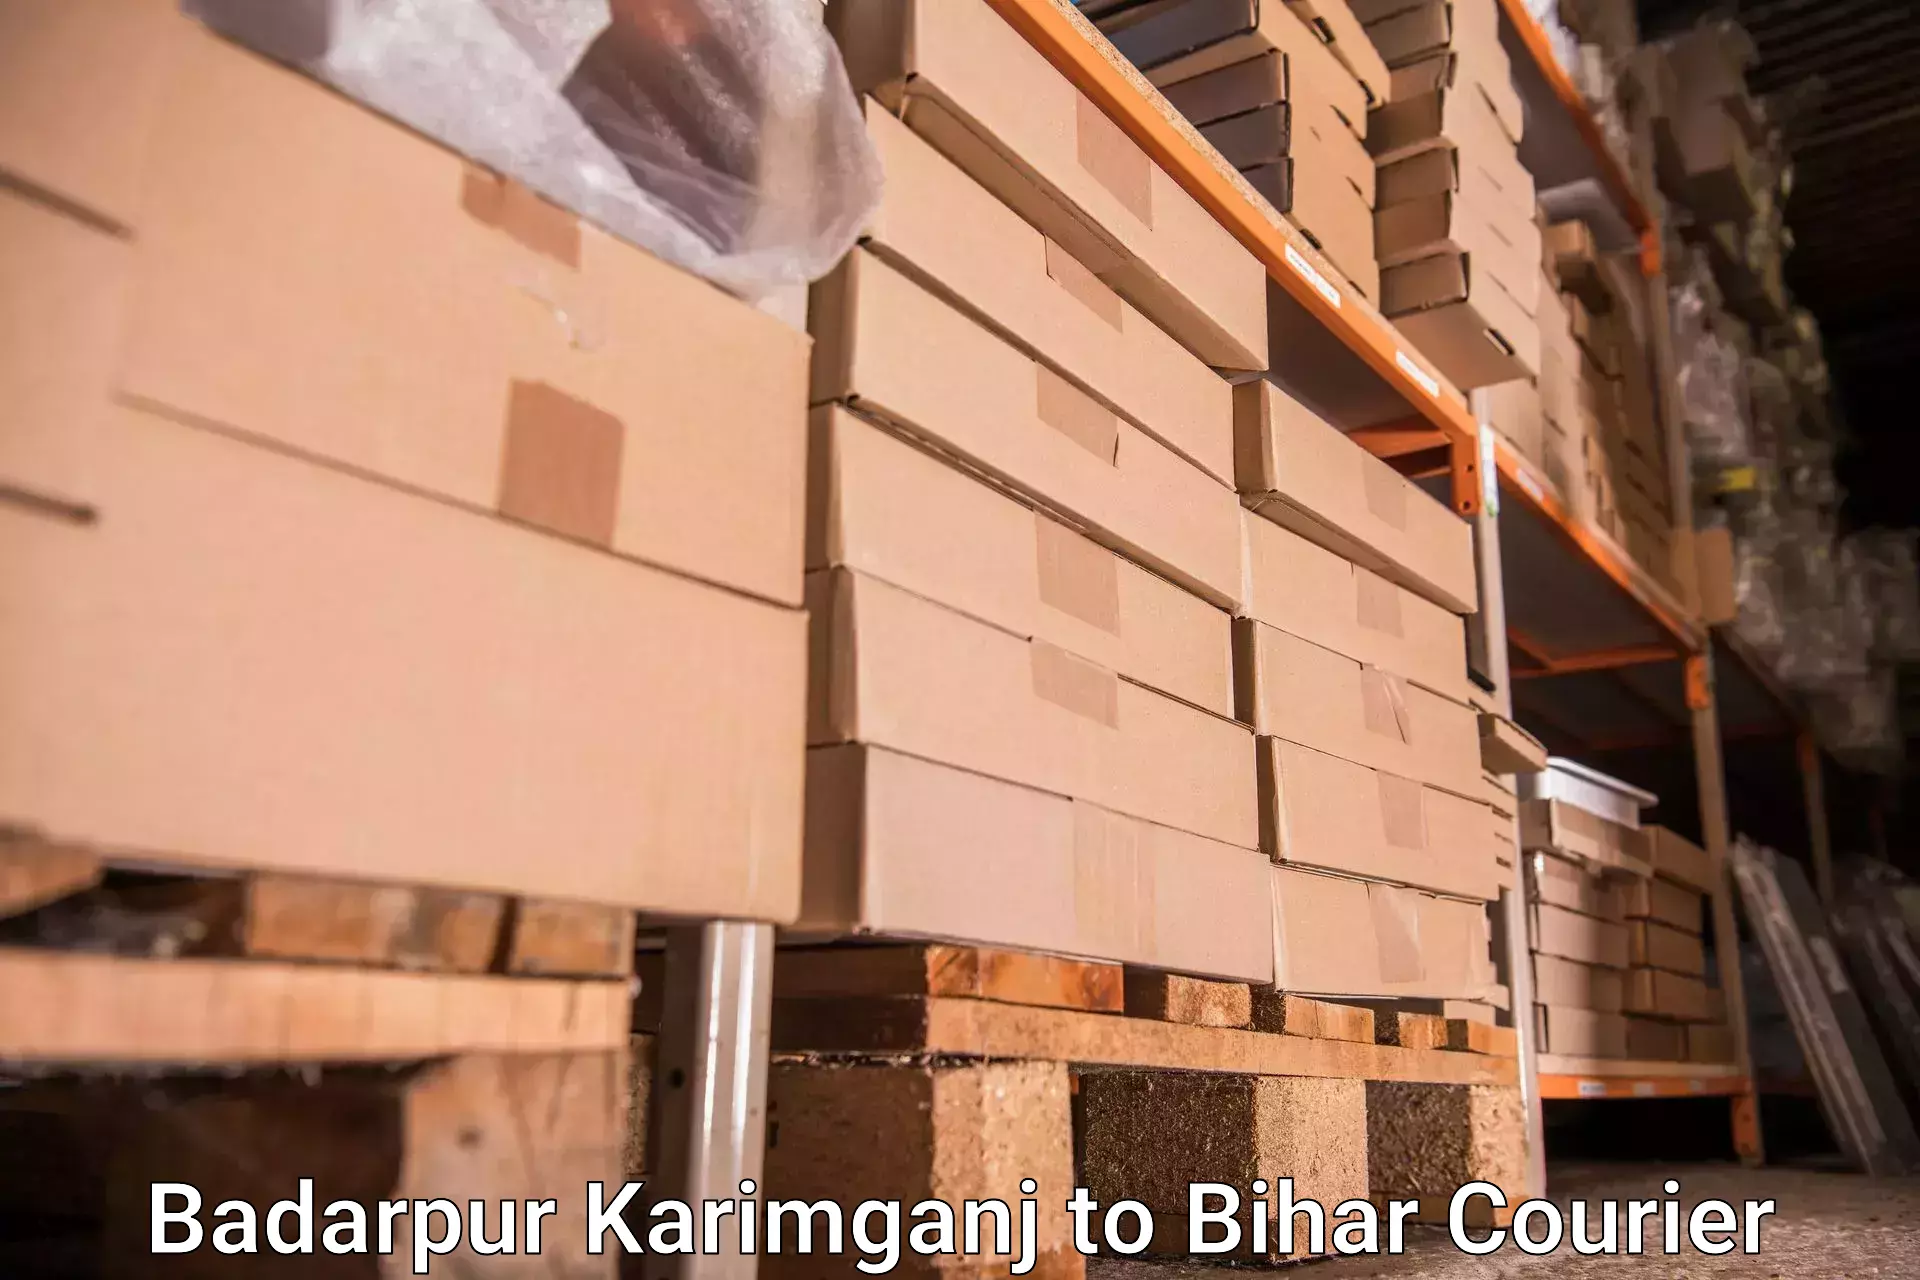 Light baggage courier Badarpur Karimganj to Kamtaul